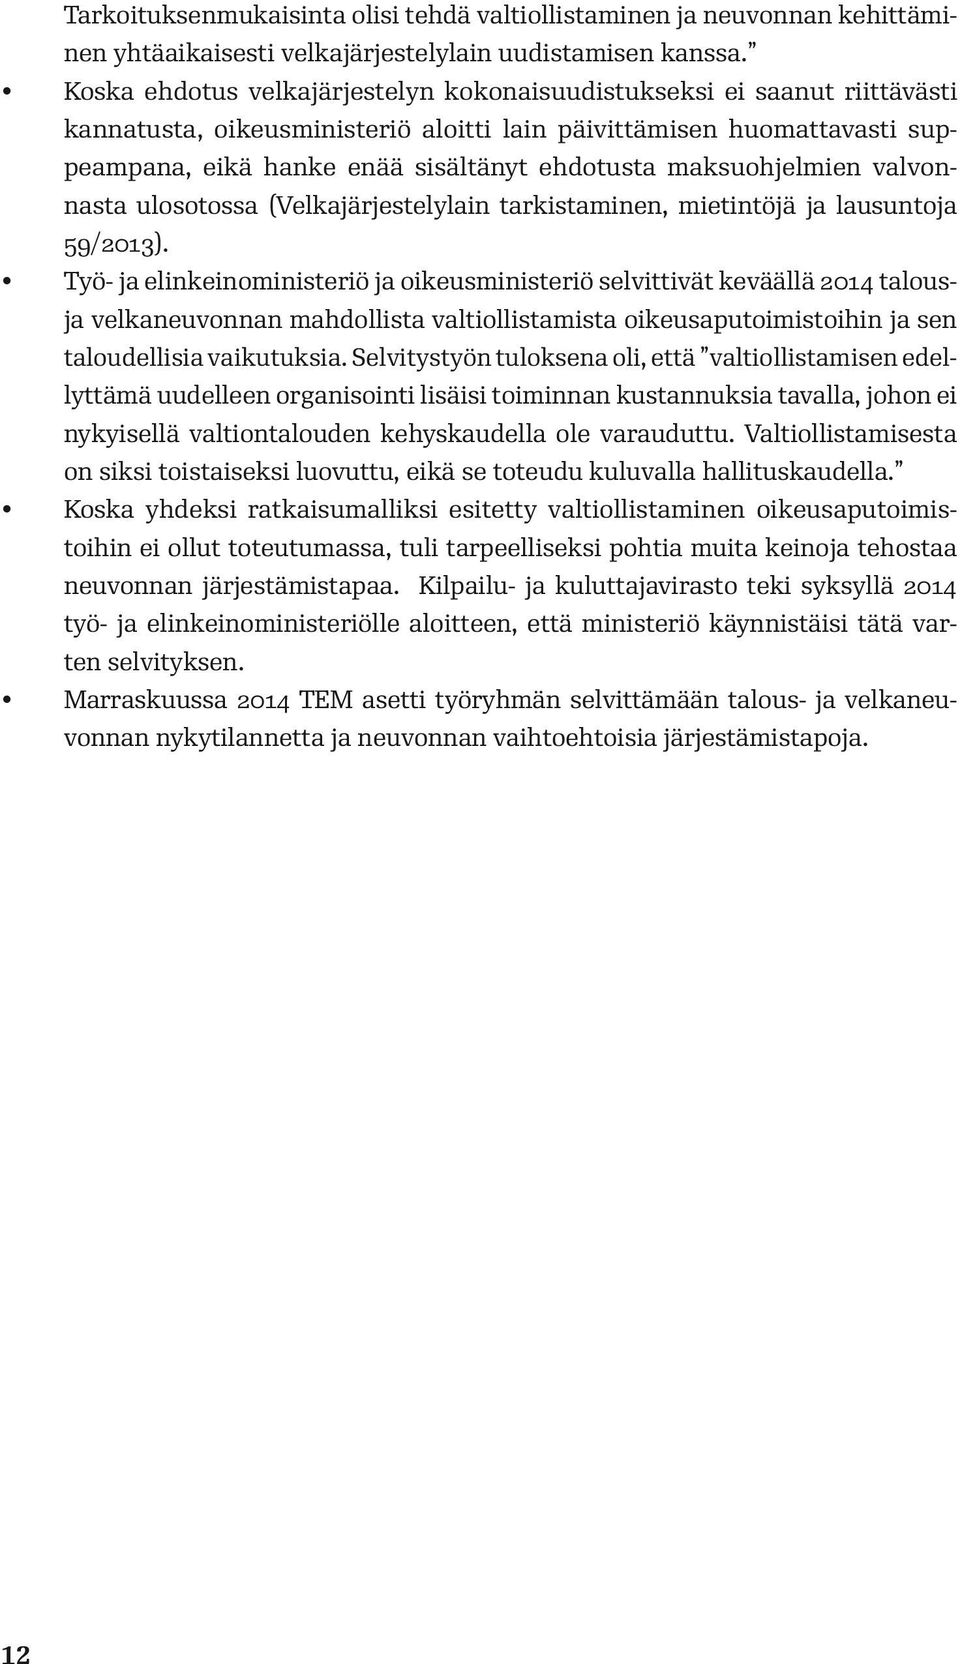 maksuohjelmien valvonnasta ulosotossa (Velkajärjestelylain tarkistaminen, mietintöjä ja lausuntoja 59/2013).